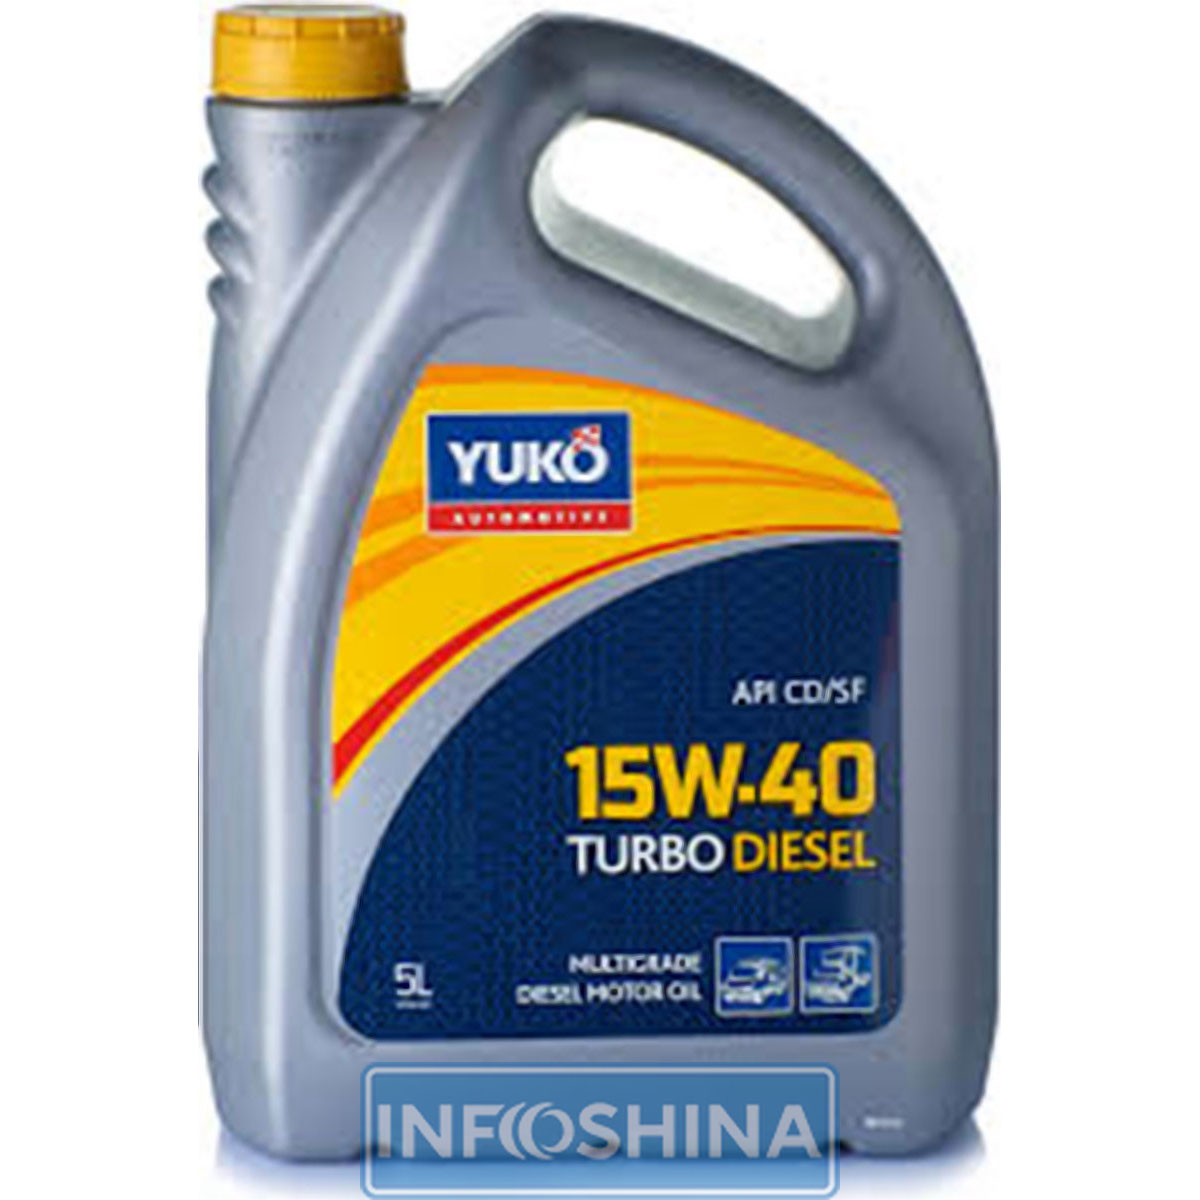 Купить масло Yuko Turbo Diesel 15W-40 (5л)